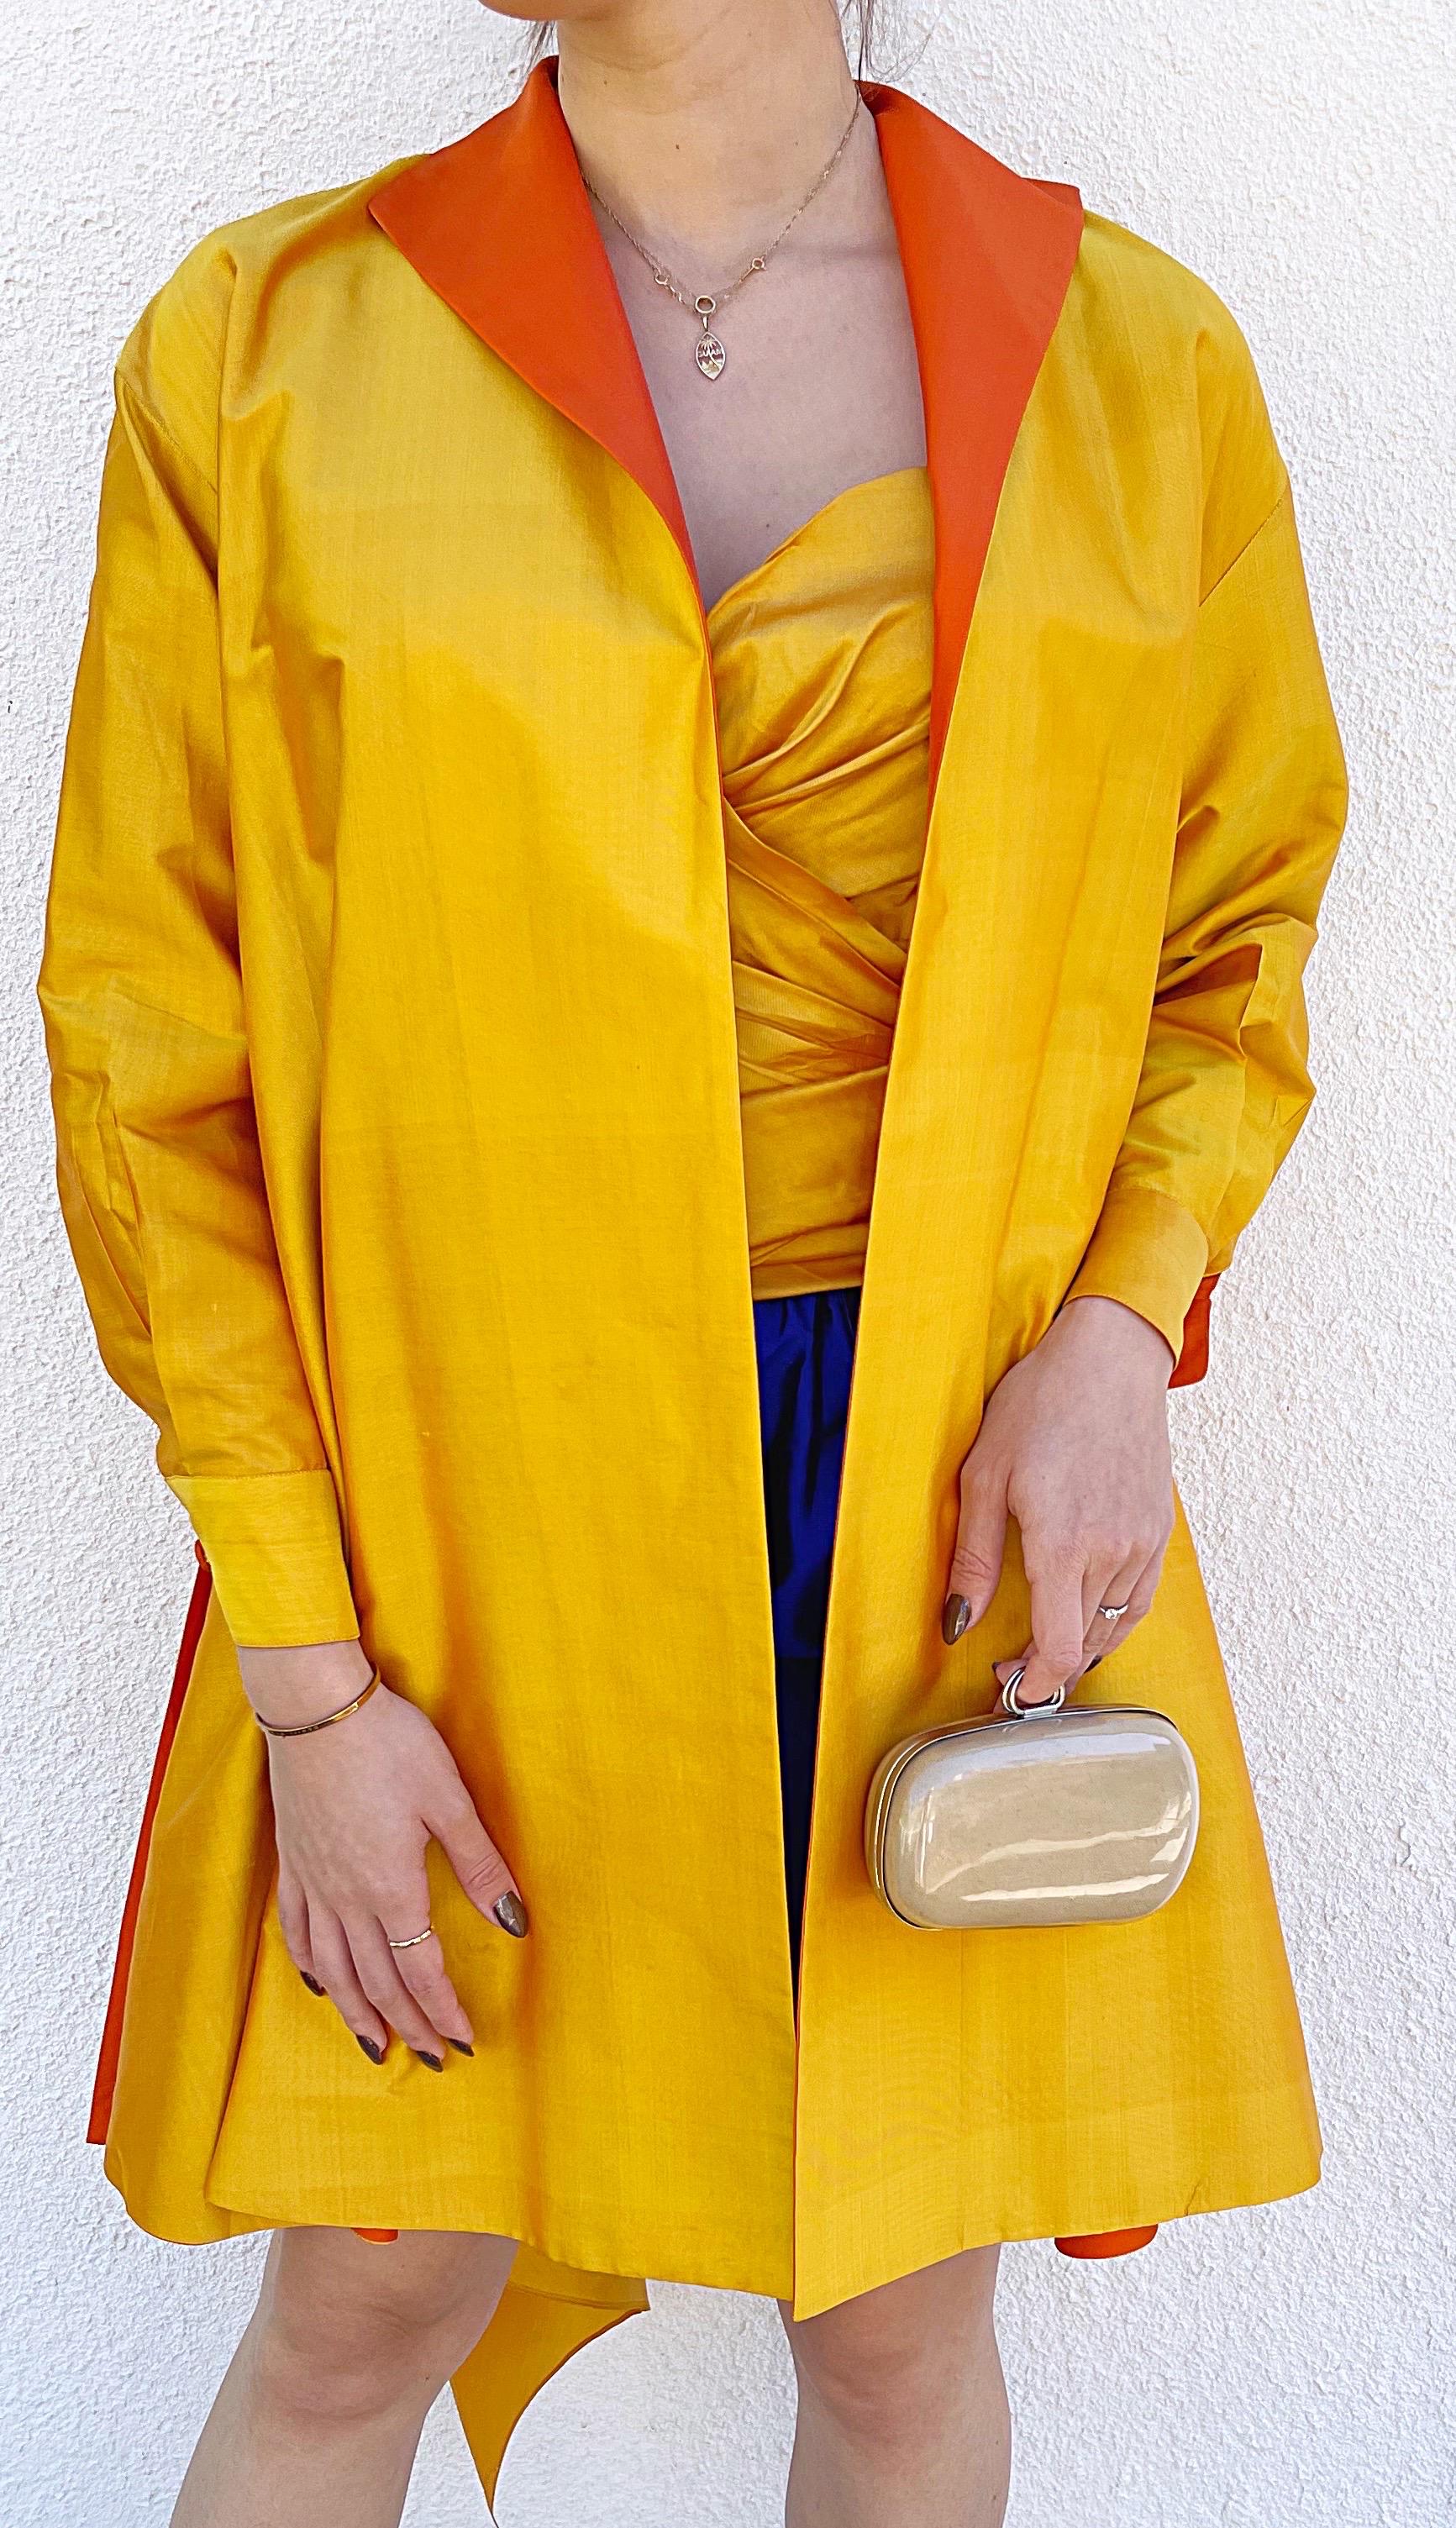 Donna Karan Spring 1987 Sz 2 Three Piece Yellow Orange Blue Bustier Skirt Jacket For Sale 6